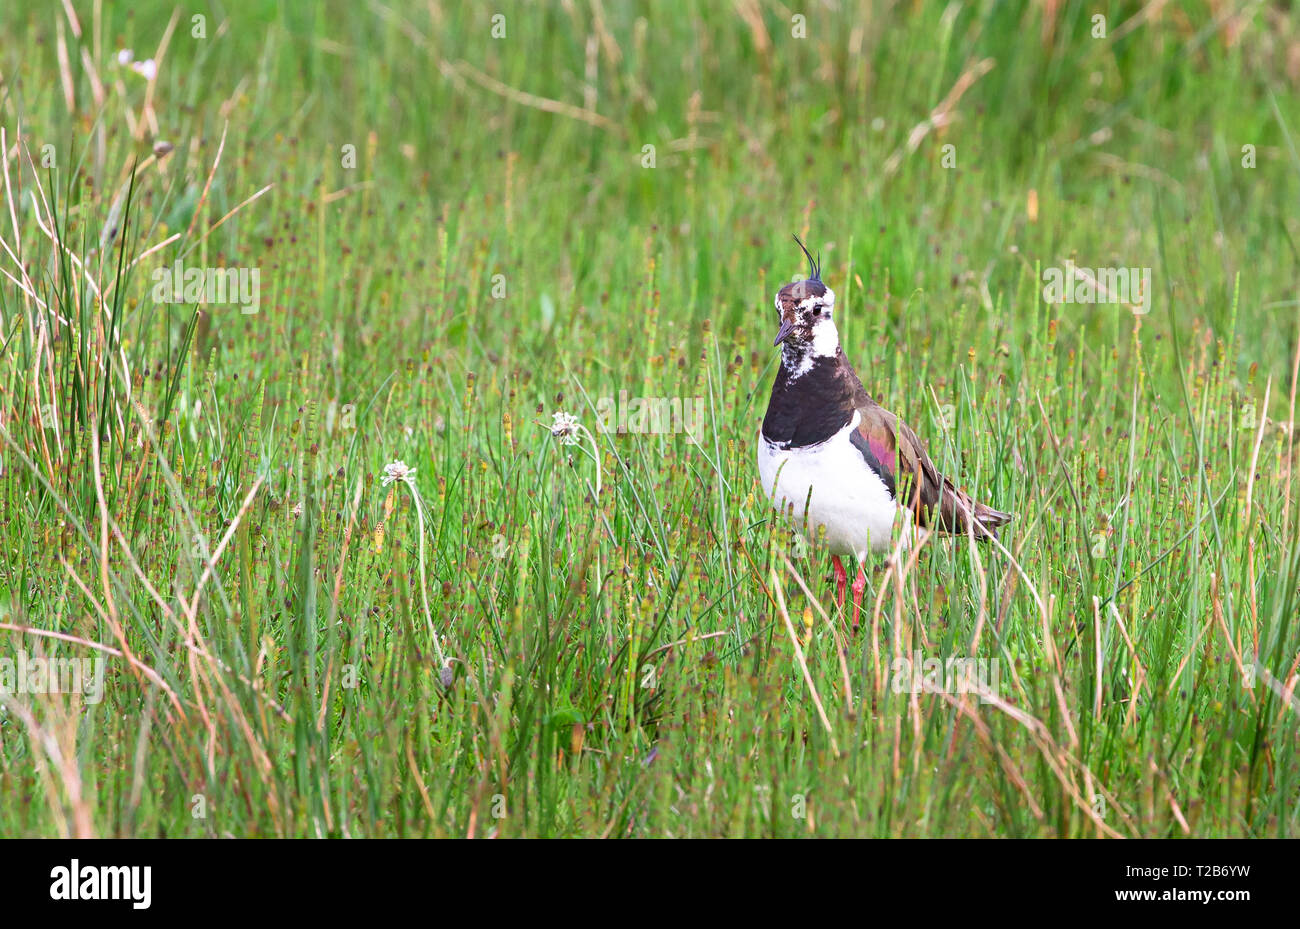 Du nord un adulte sociable (Vanellus vanellus) se tient dans l'herbe haute à l'Loch Gruinart réserve naturelle sur l'île d'Islay, en Écosse. Banque D'Images